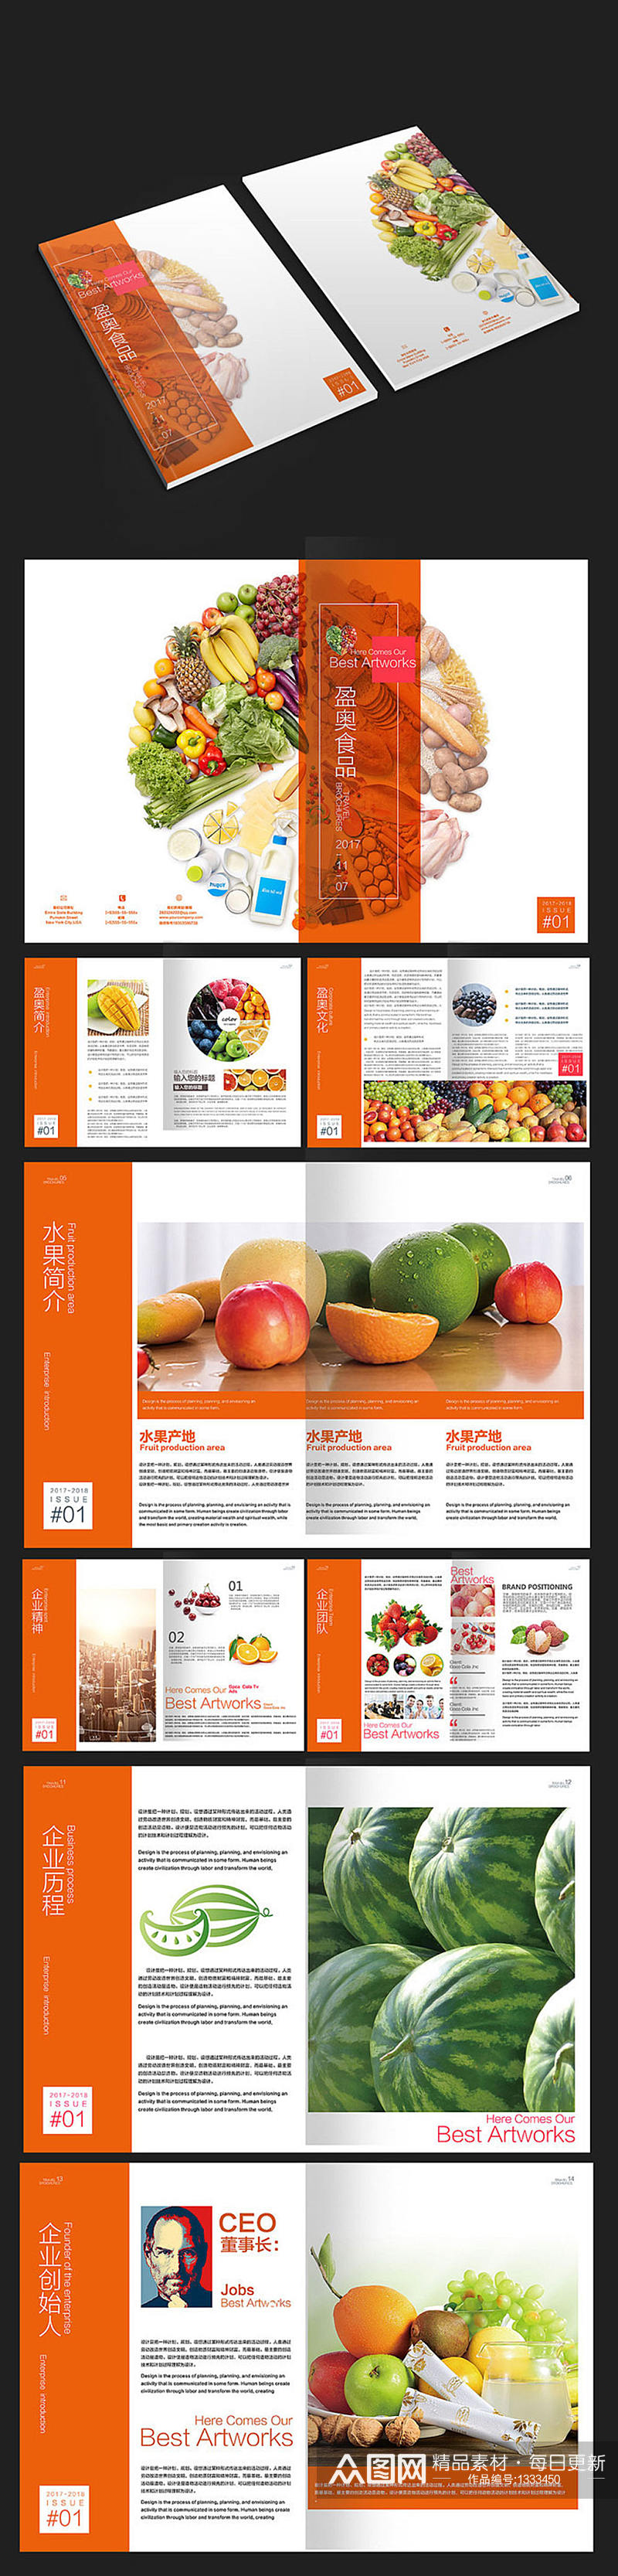 水果食品画册农产品画册设计素材